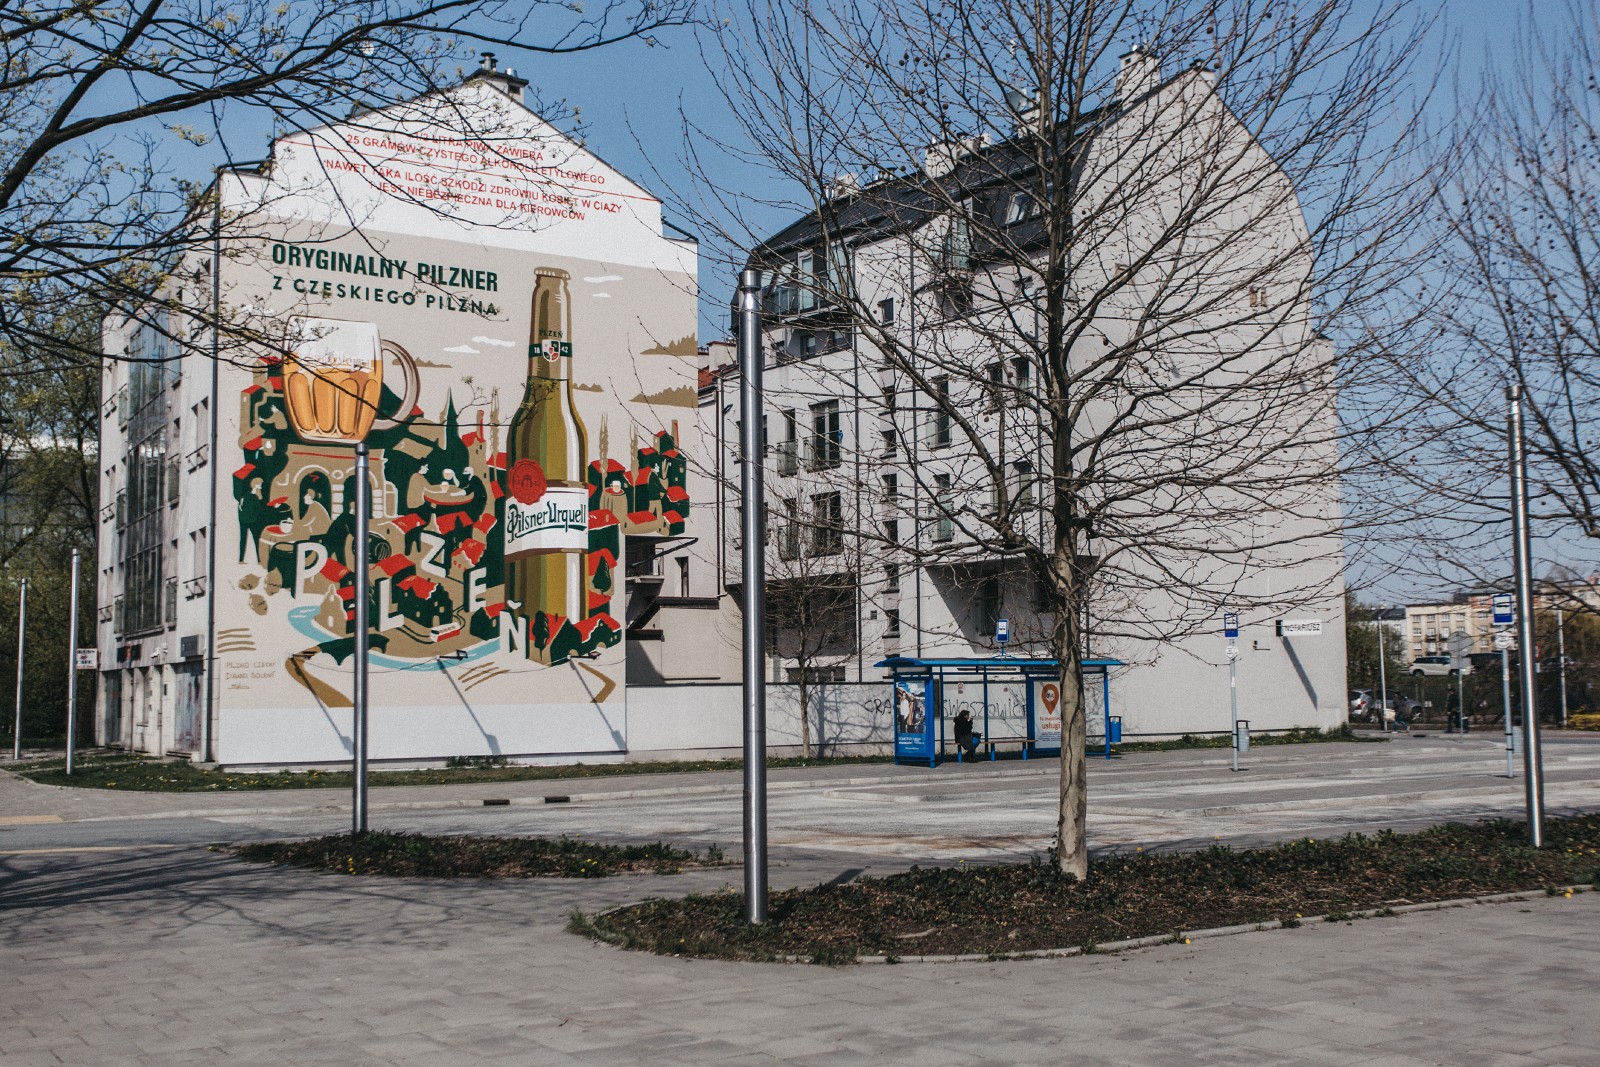 Mural reklamowy Pilsner Urquell w Krakowie Zweirzyniecka 22 | Oryginalny pilzner z czeskiego Pilzna | Portfolio